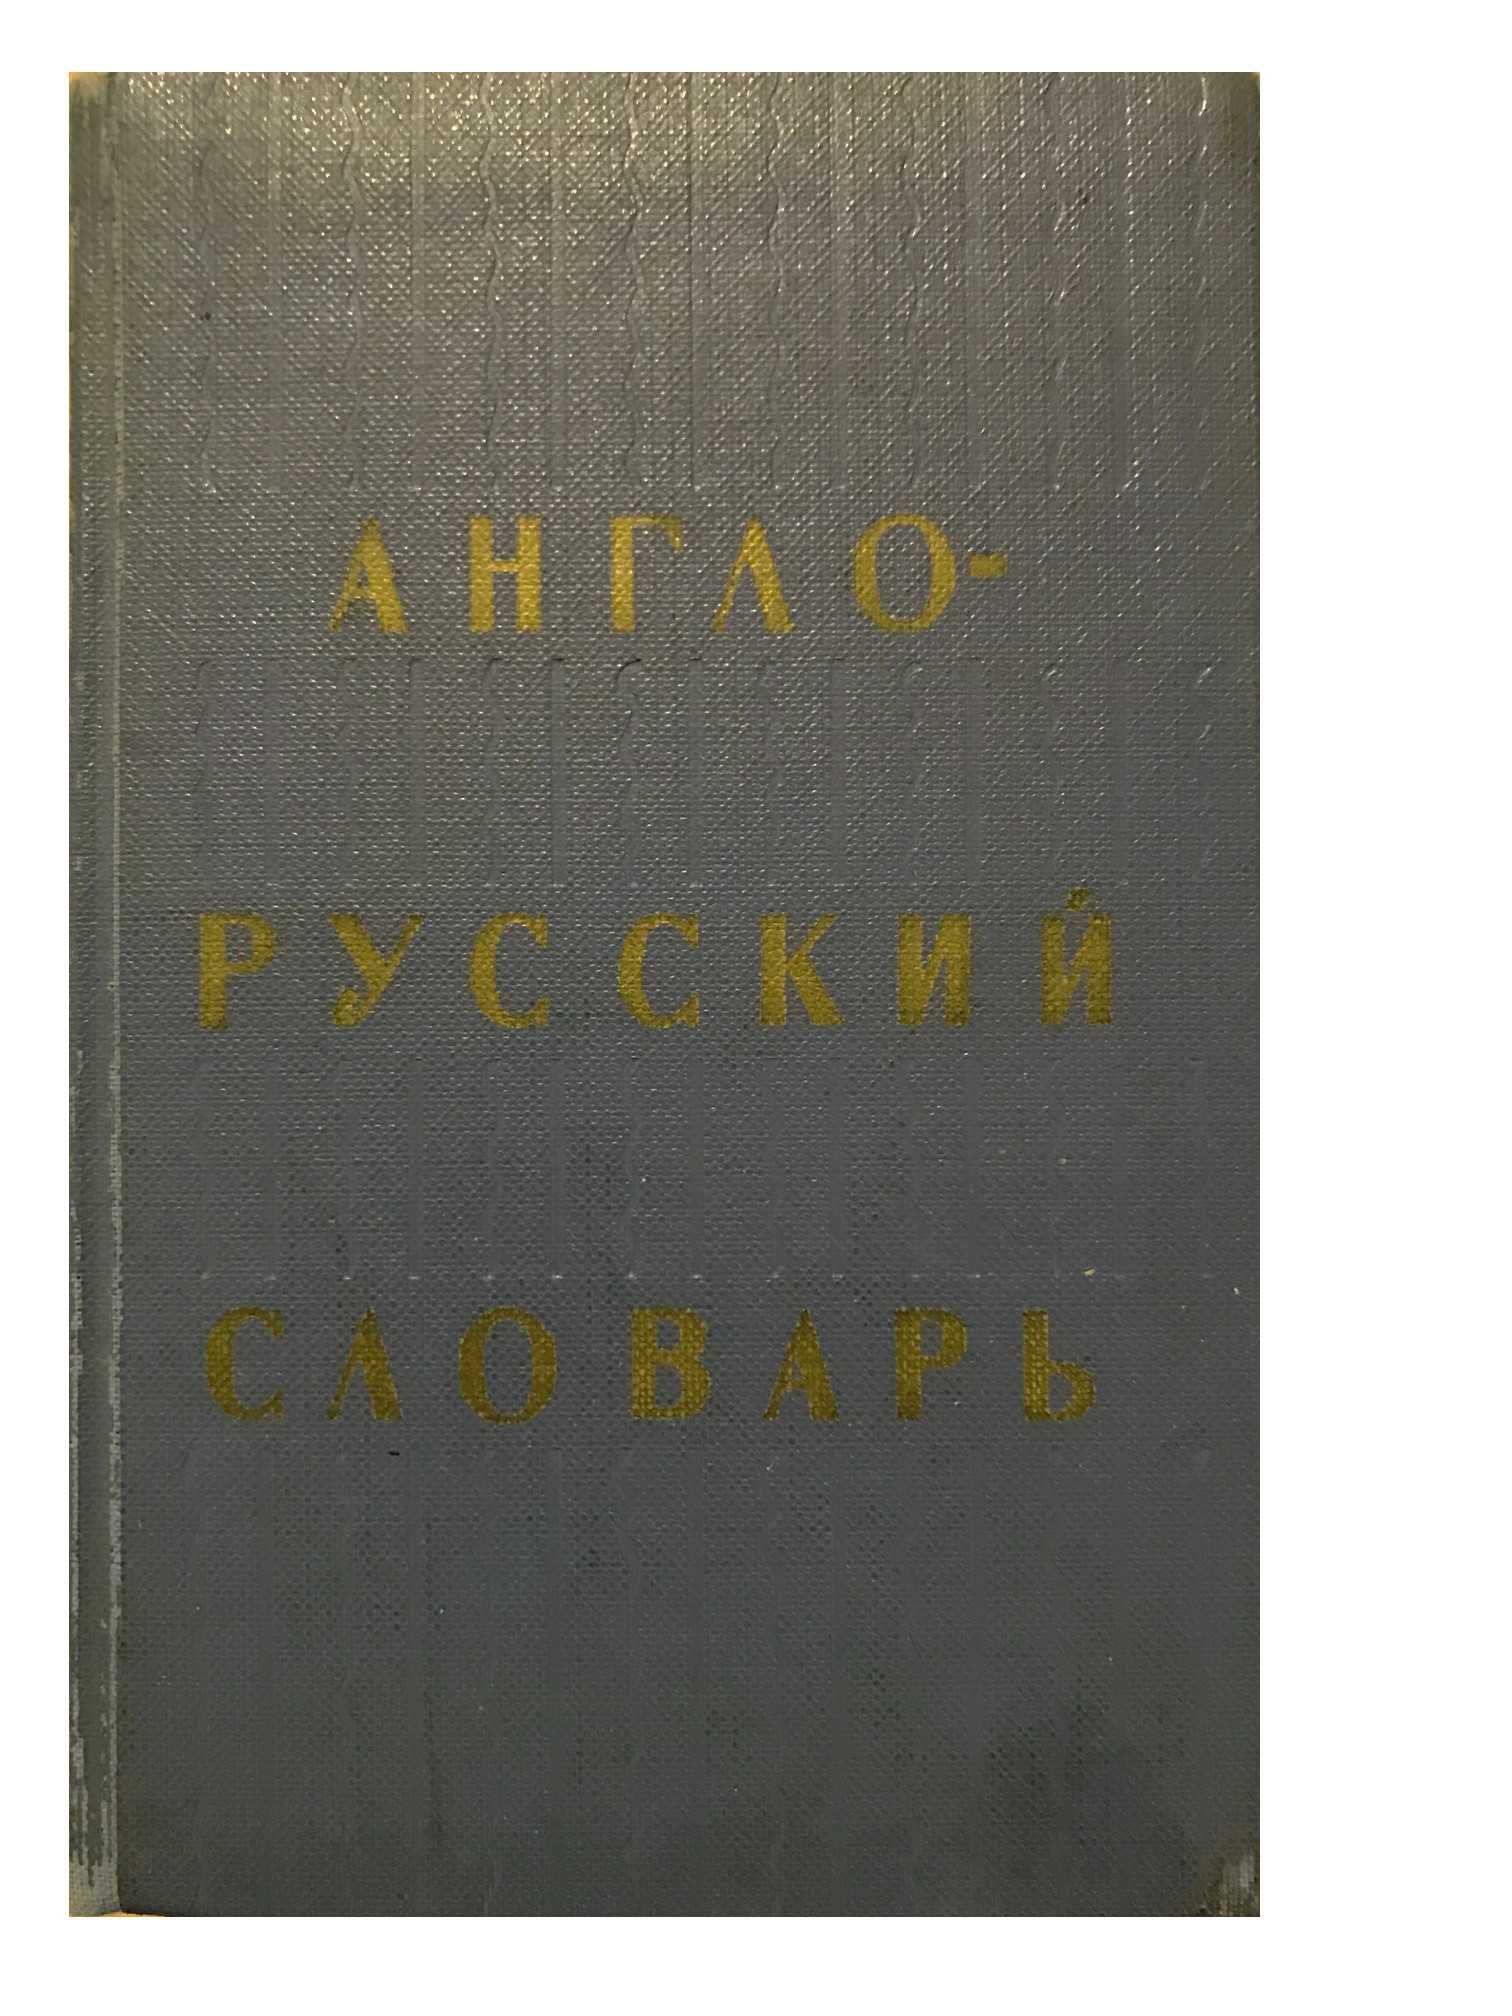 Słownik angielsko-rosyjski